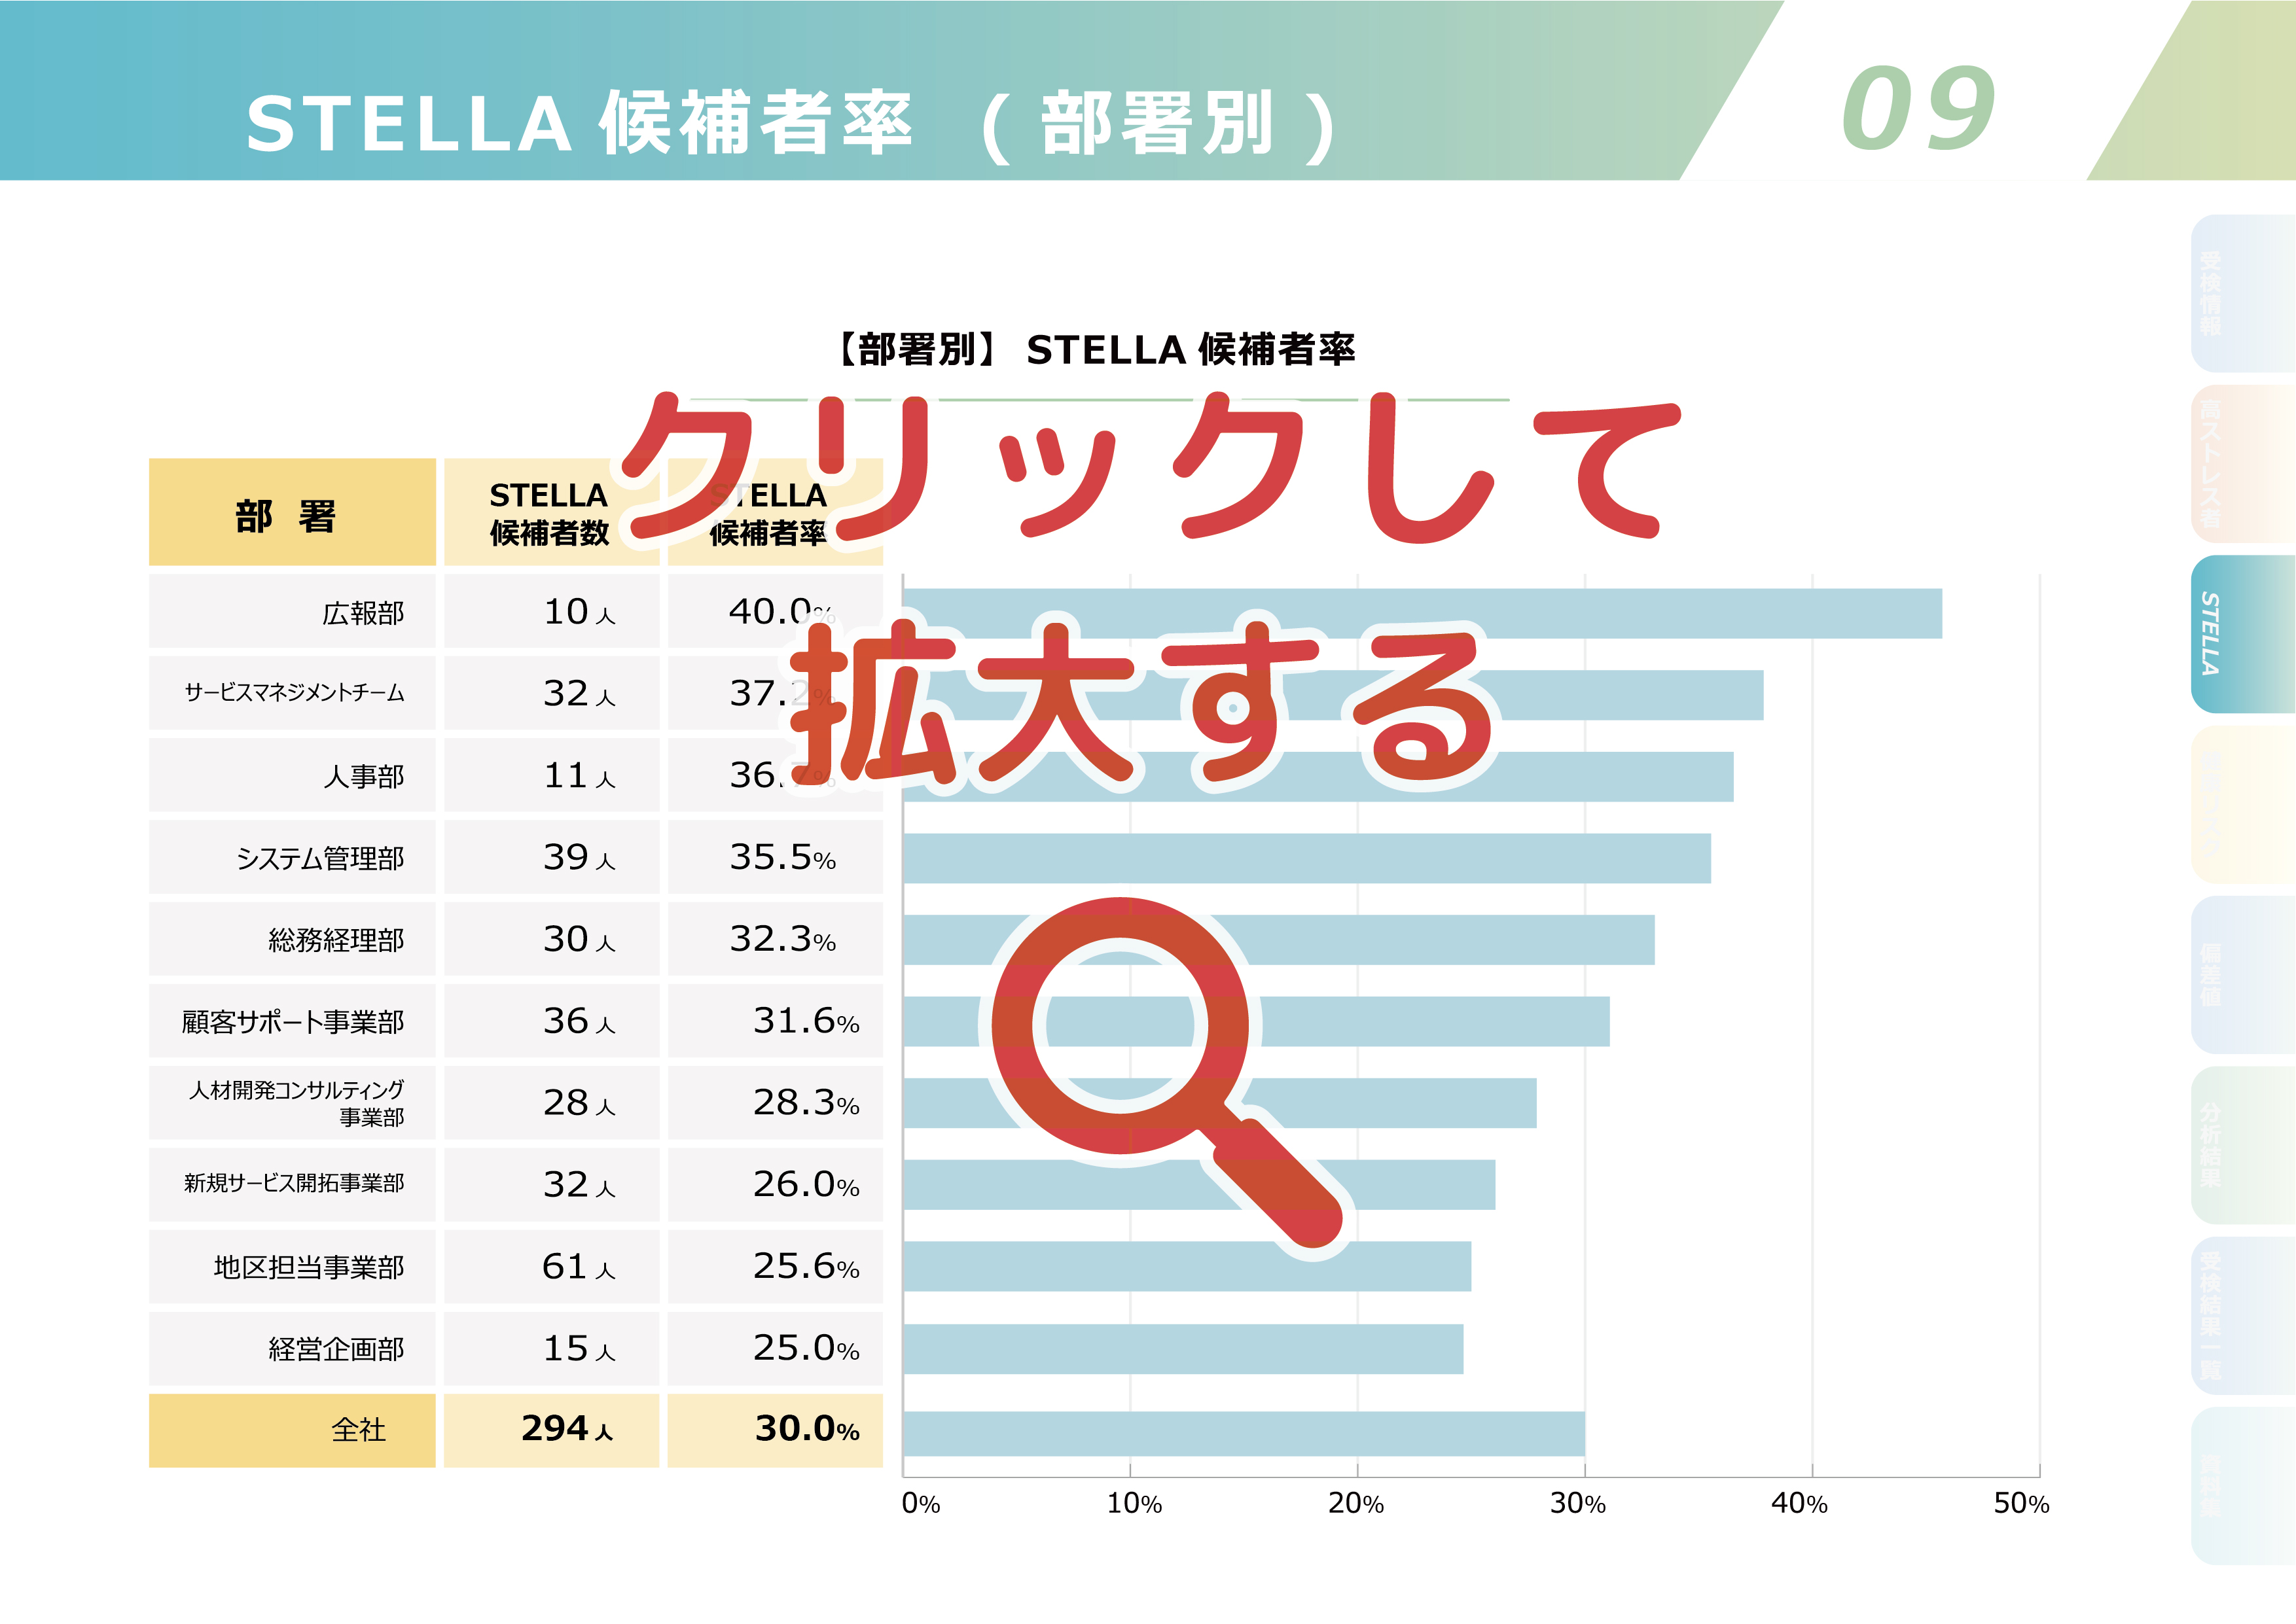 ストレスチェックの集団分析サンプル【09】STELLA 候補者率( 部署別 )